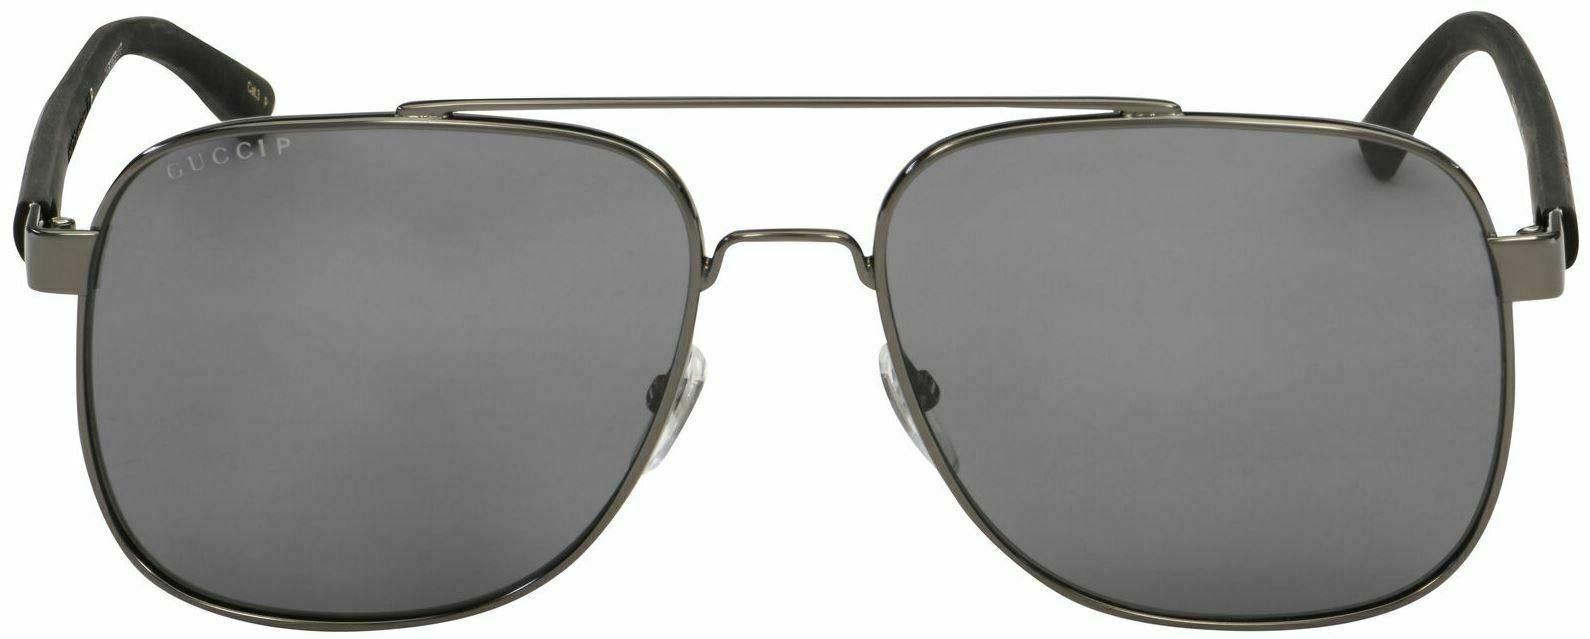 Gucci GG 0422 S 002 Ruthenium/Black Polarized Sunglasses